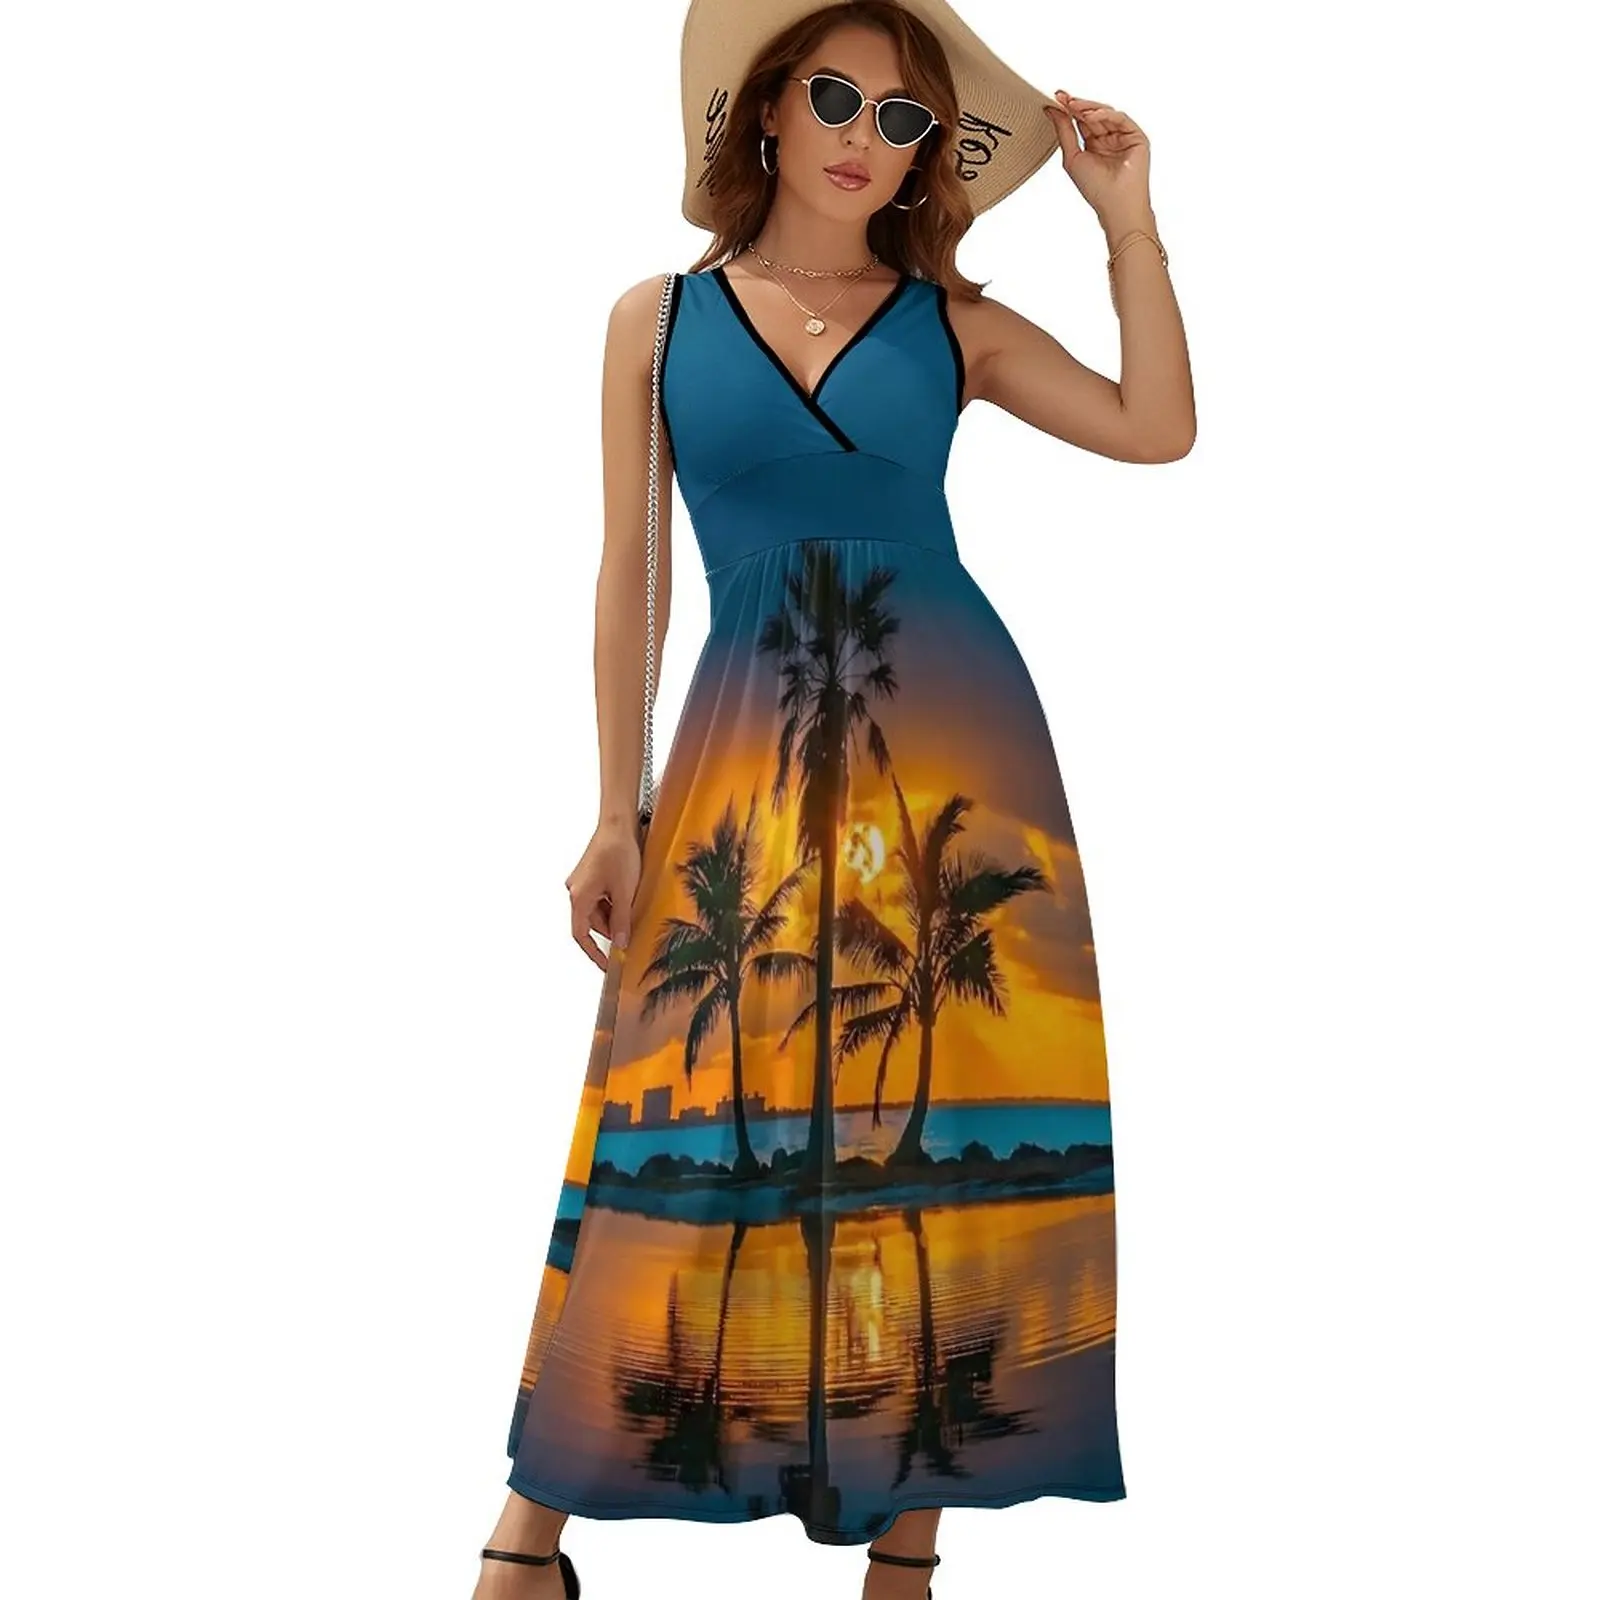 

Женское платье-макси с высокой талией, длинное платье в богемном стиле с принтом пальм и заката, летнее платье с графическим принтом